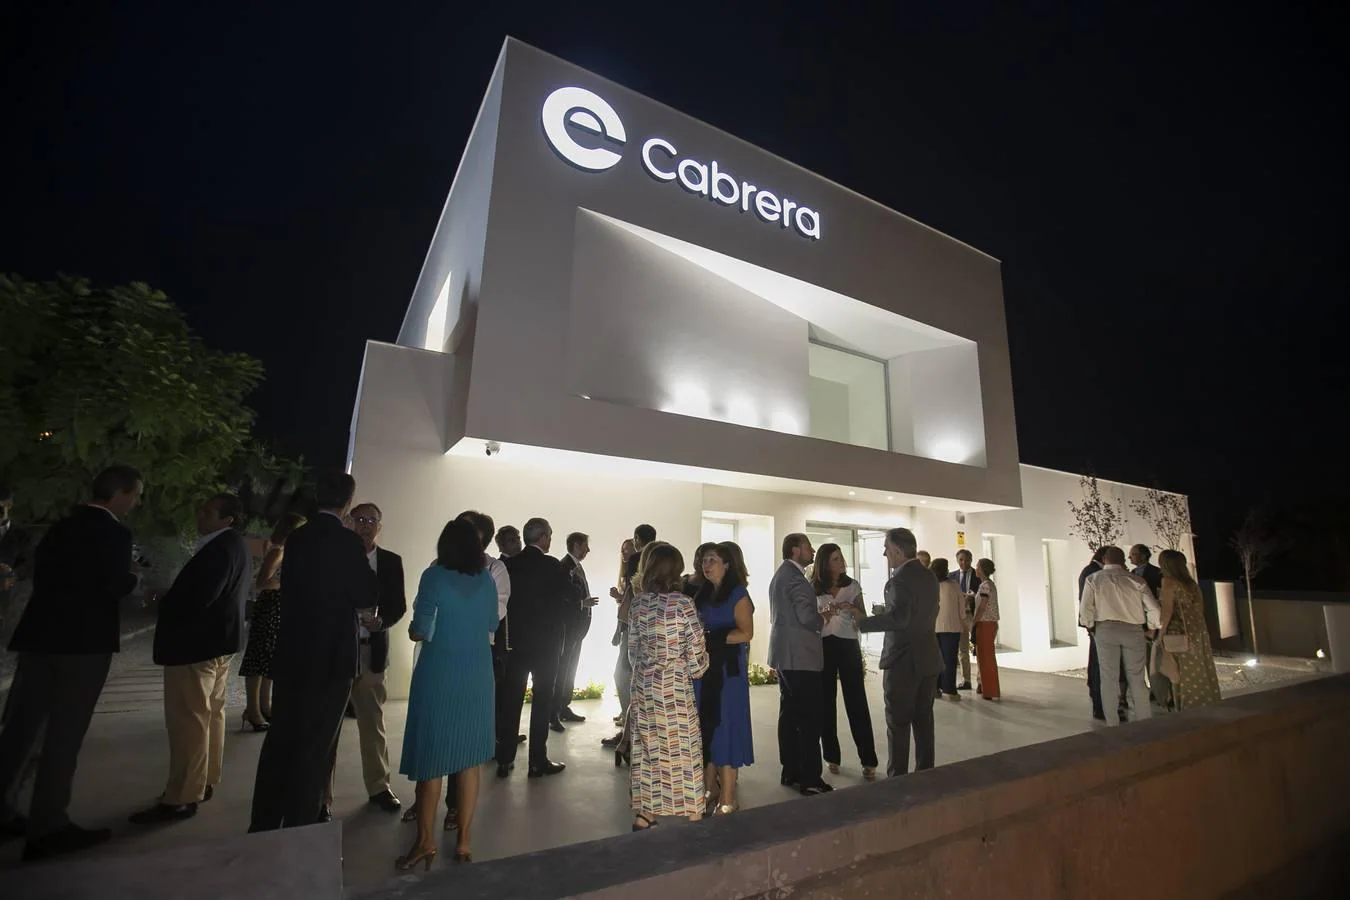 La nueva clínica del doctor Emilio Cabrera en Córdoba, en imágenes